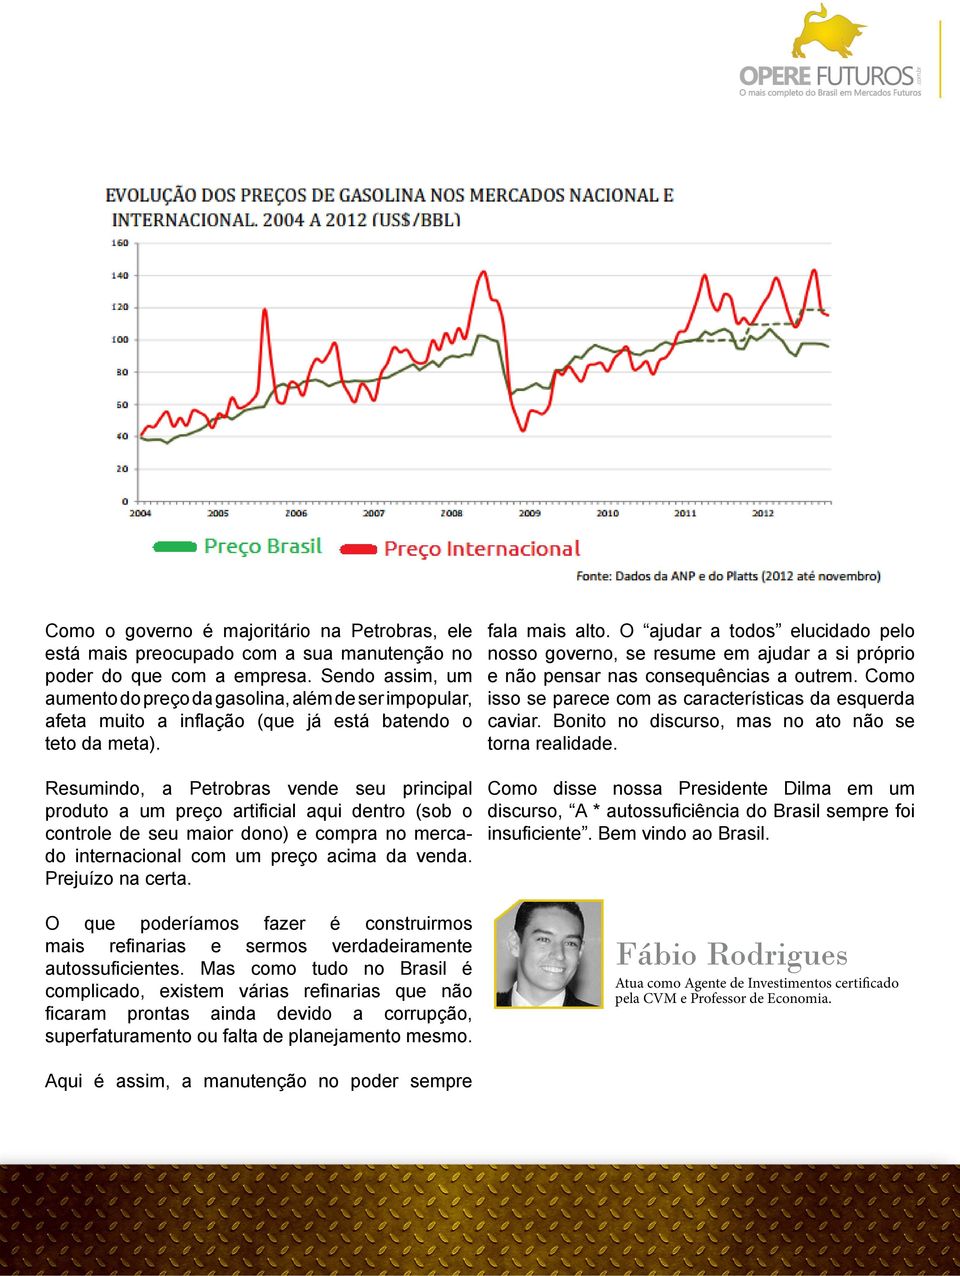 Resumindo, a Petrobras vende seu principal controle de seu maior dono) e compra no mercado internacional com um preço acima da venda. Prejuízo na certa. fala mais alto.